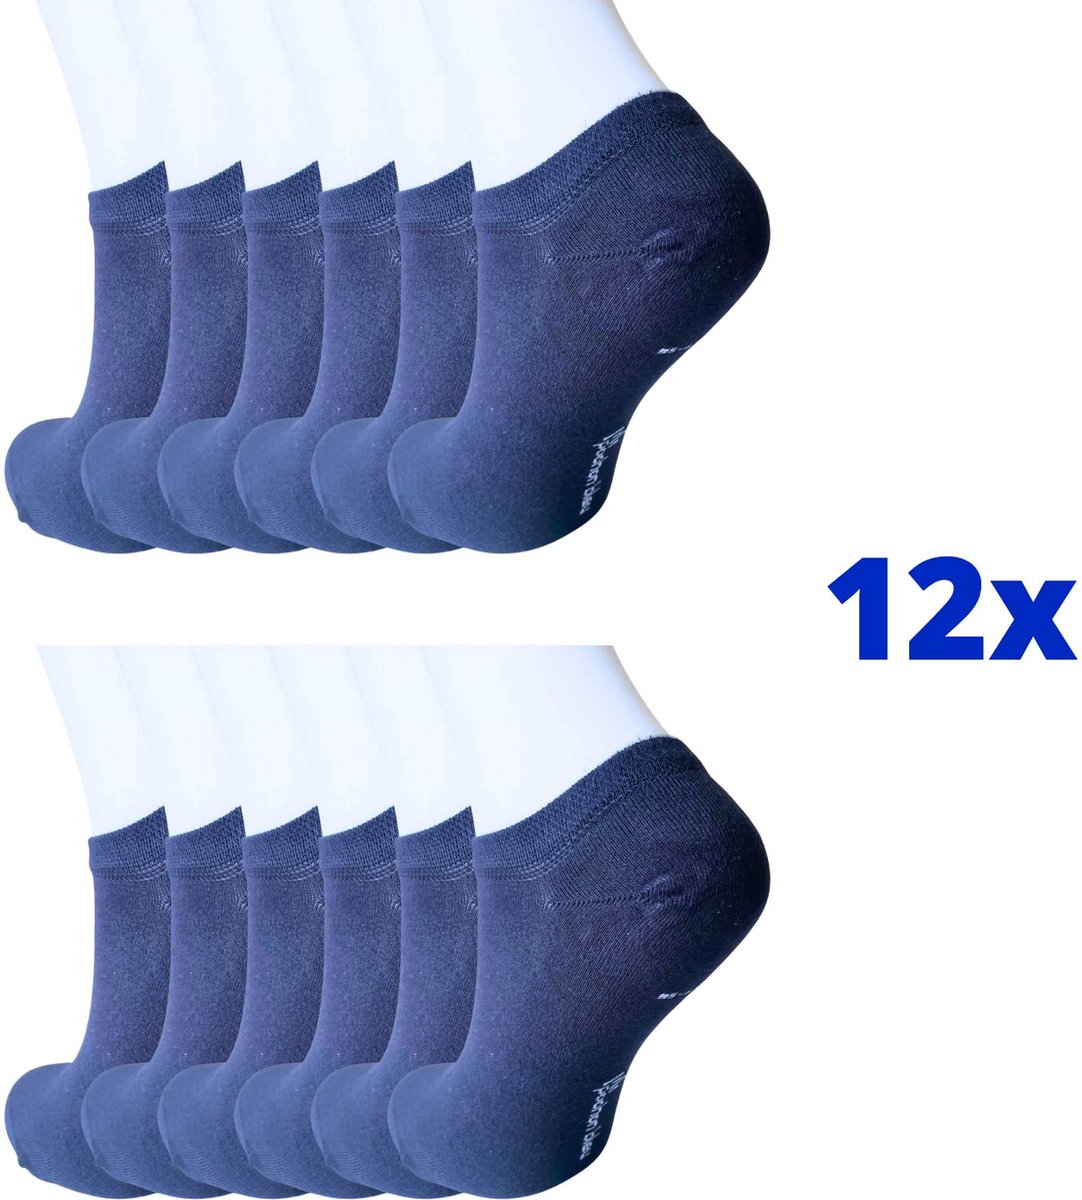 12x Bamboe Sneakersokken Naadloos - Unisex - 12 paar - Marineblauw - Maat 35-41 - Bamboe 84% - Sokken